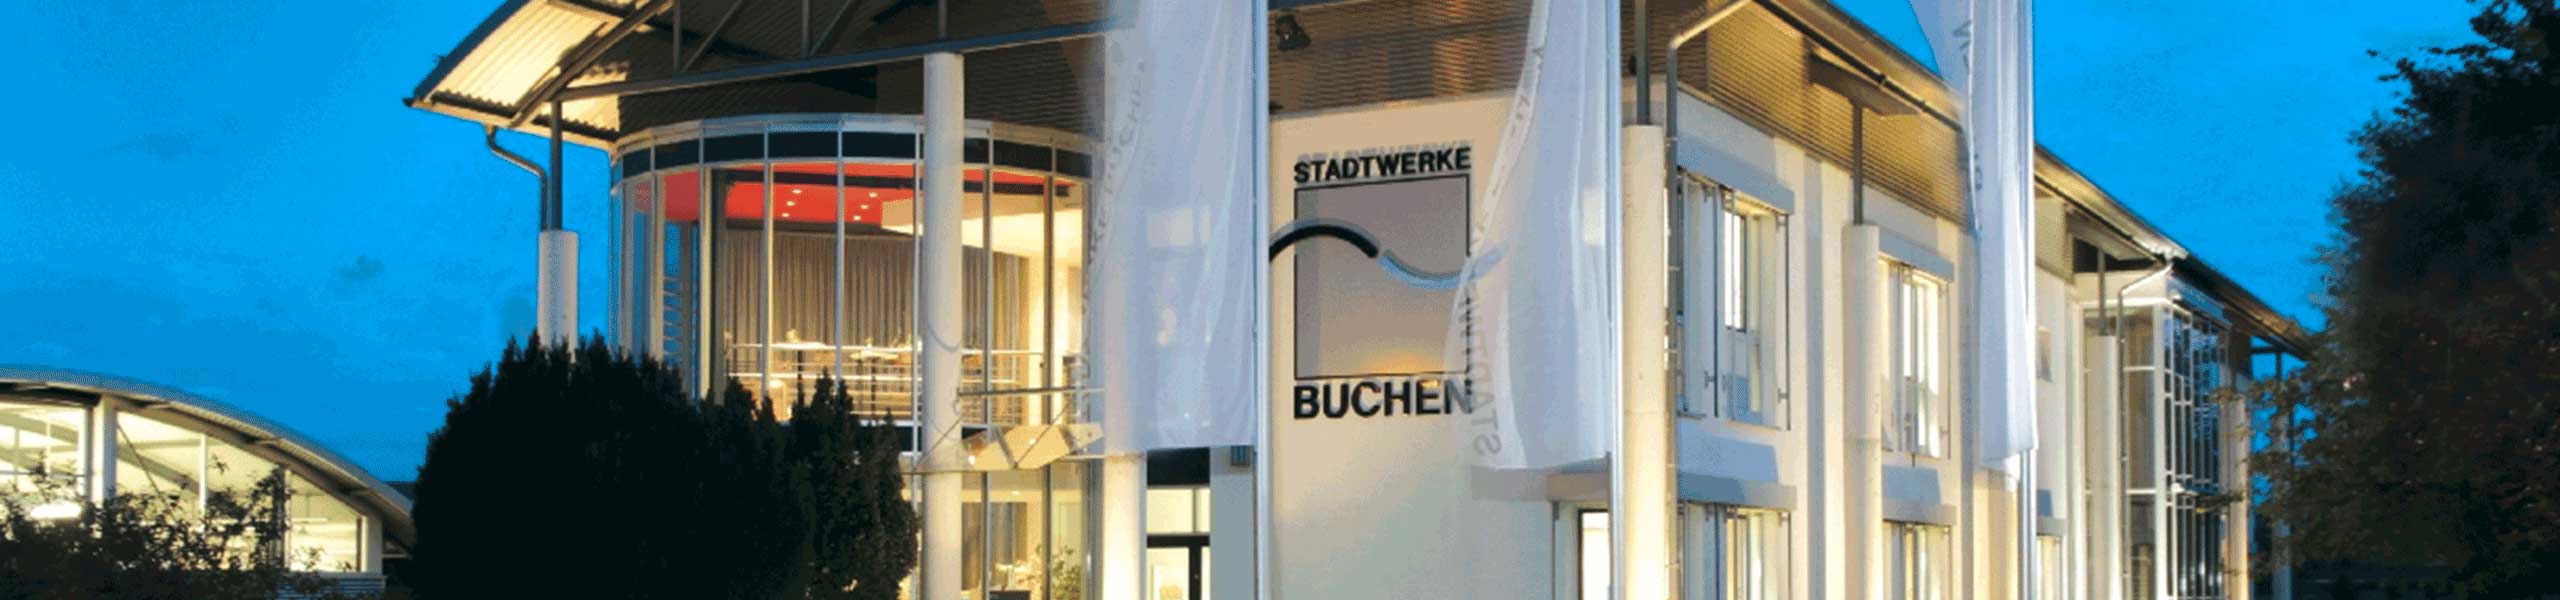 Stadtwerke Buchen GmbH & Co KG - Sachbearbeiter Materialwirtschaft / Auftragsabrechnung (m/w/d)